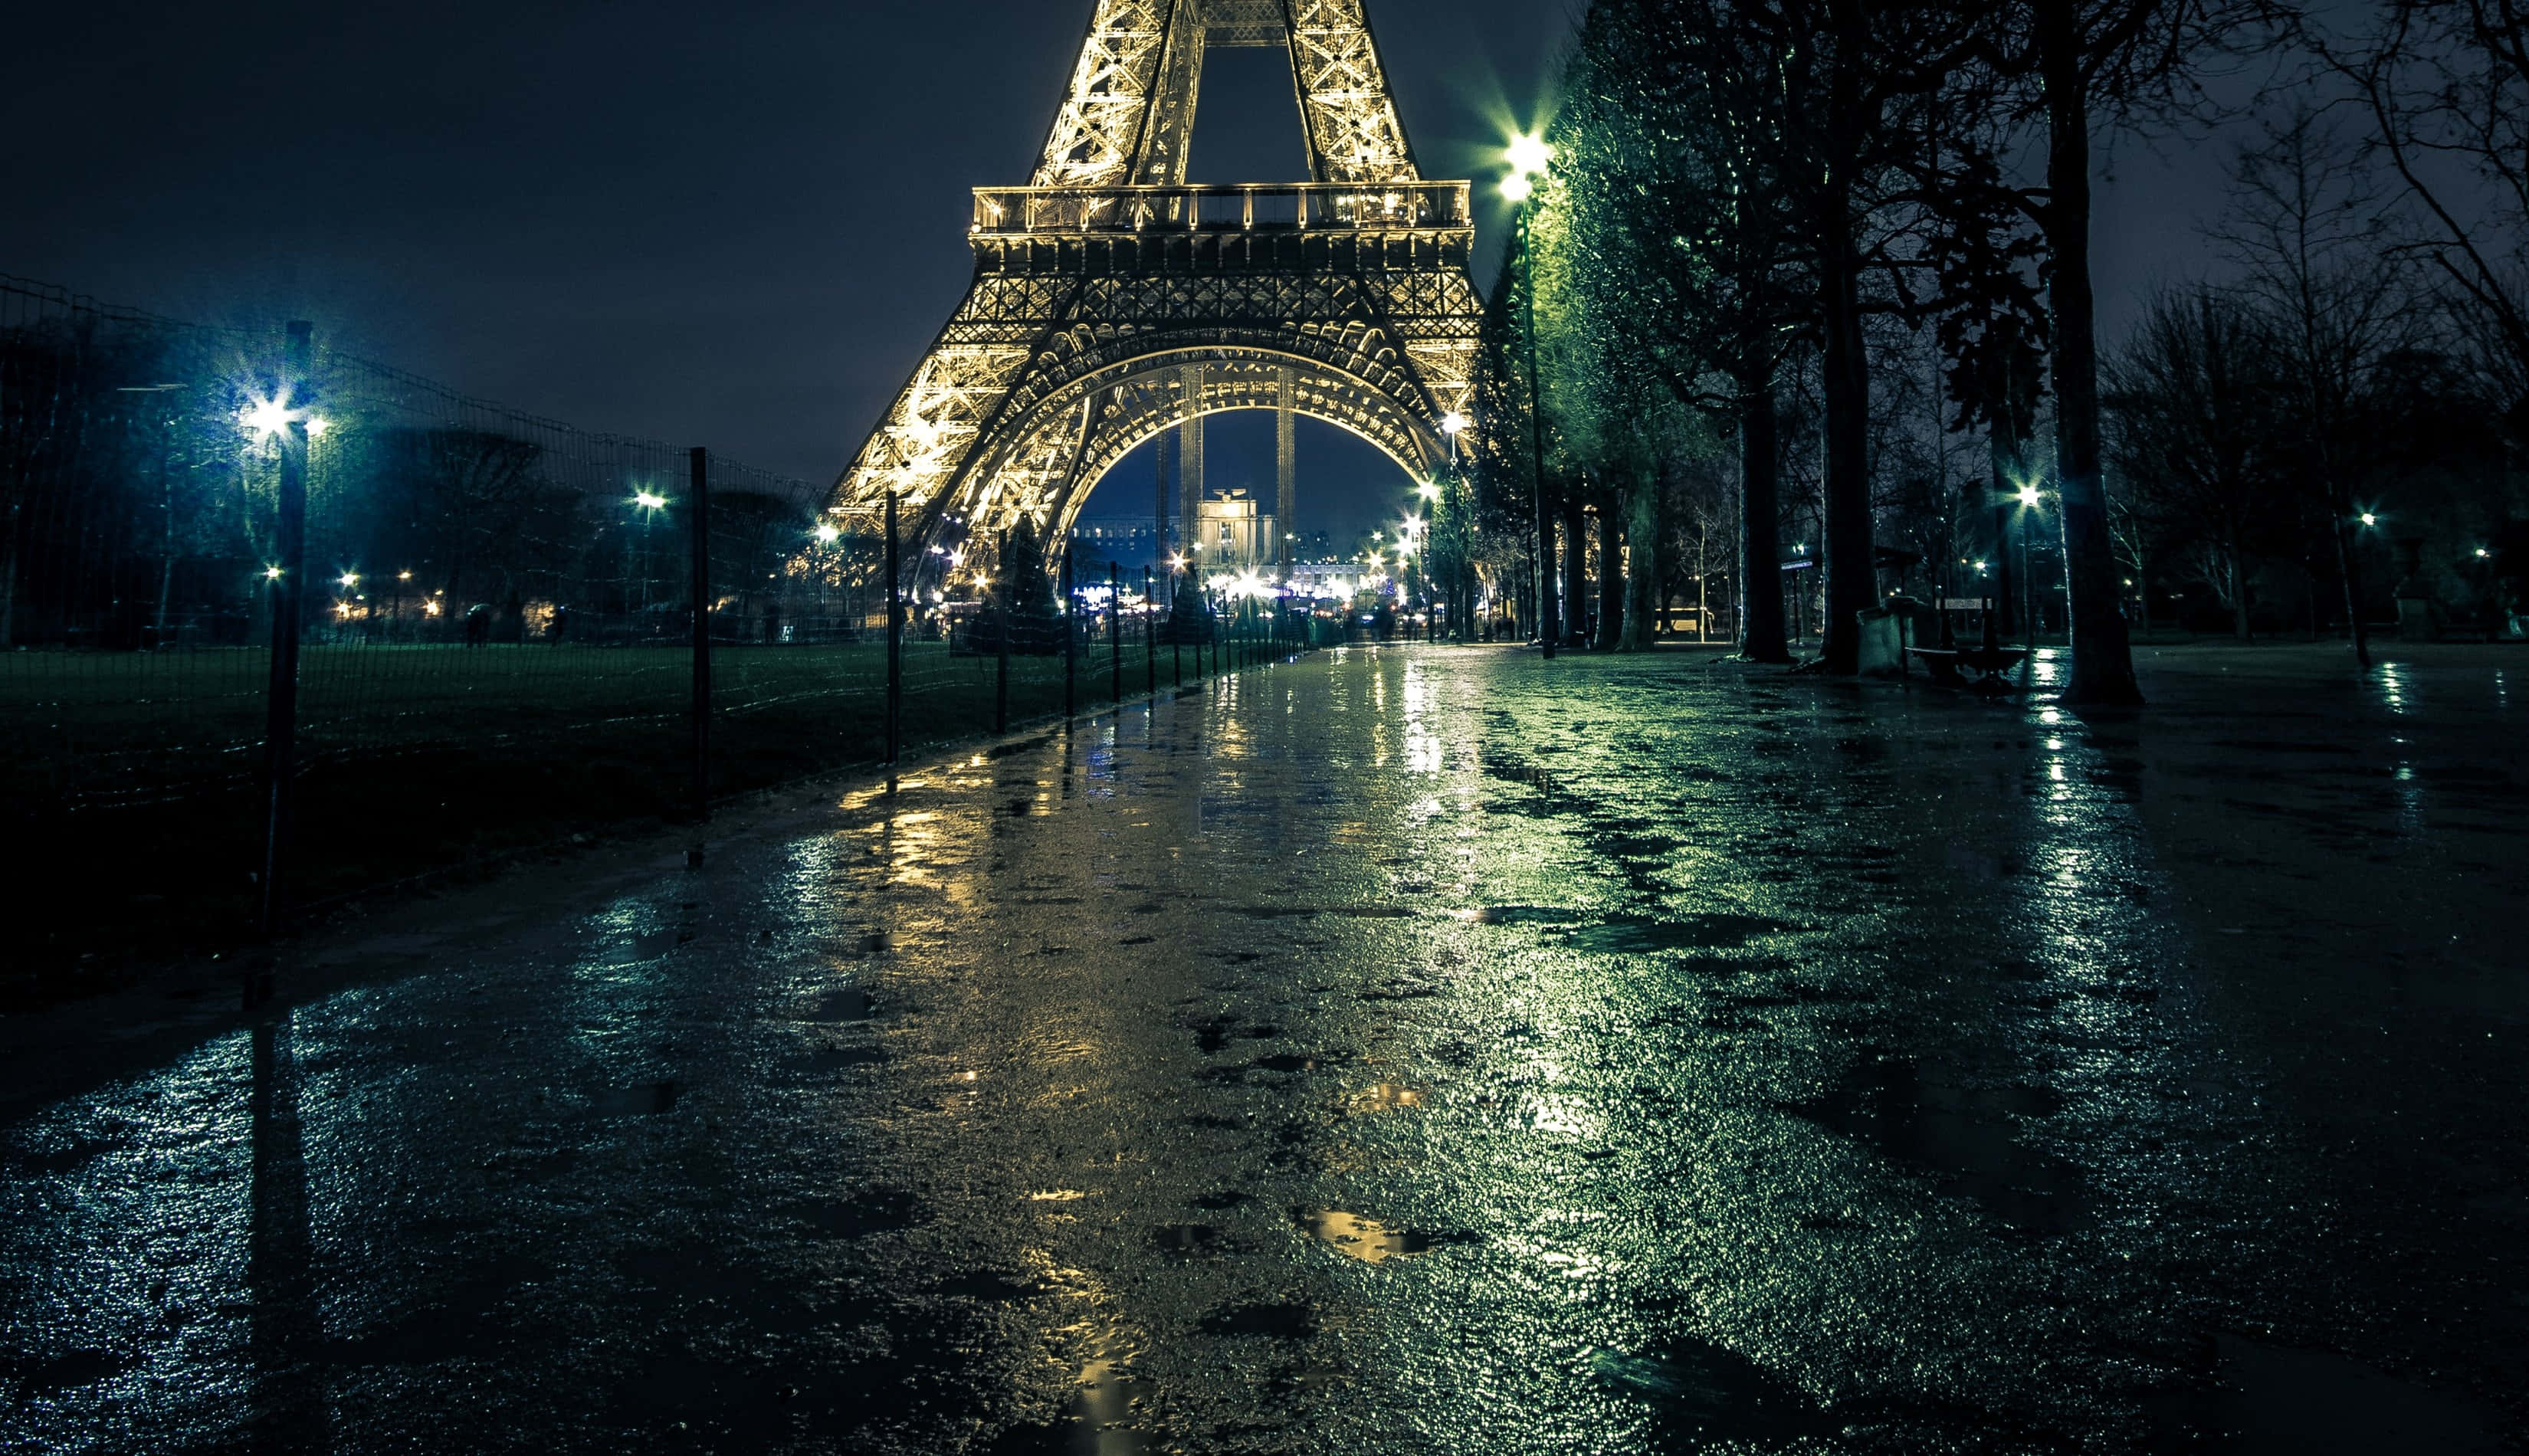 Laicónica Torre Eiffel Ilumina La Noche En París.